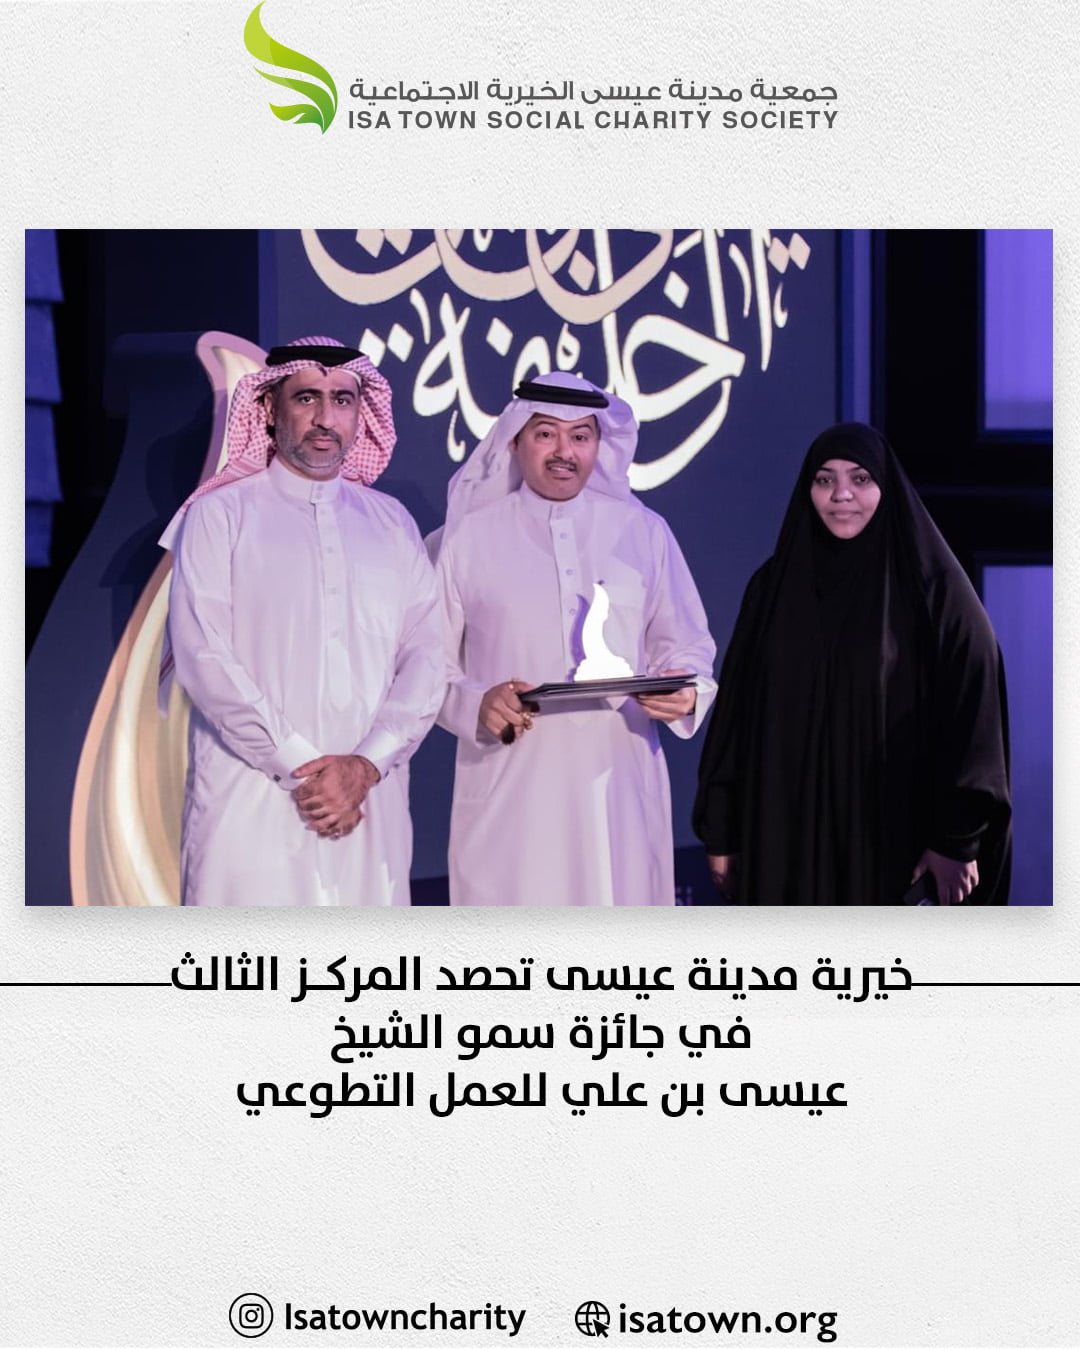 خيرية مدينة عيسى تحصد المركز الثالث  في جائزة سمو الشيخ عيسى بن علي للعمل التطوعي